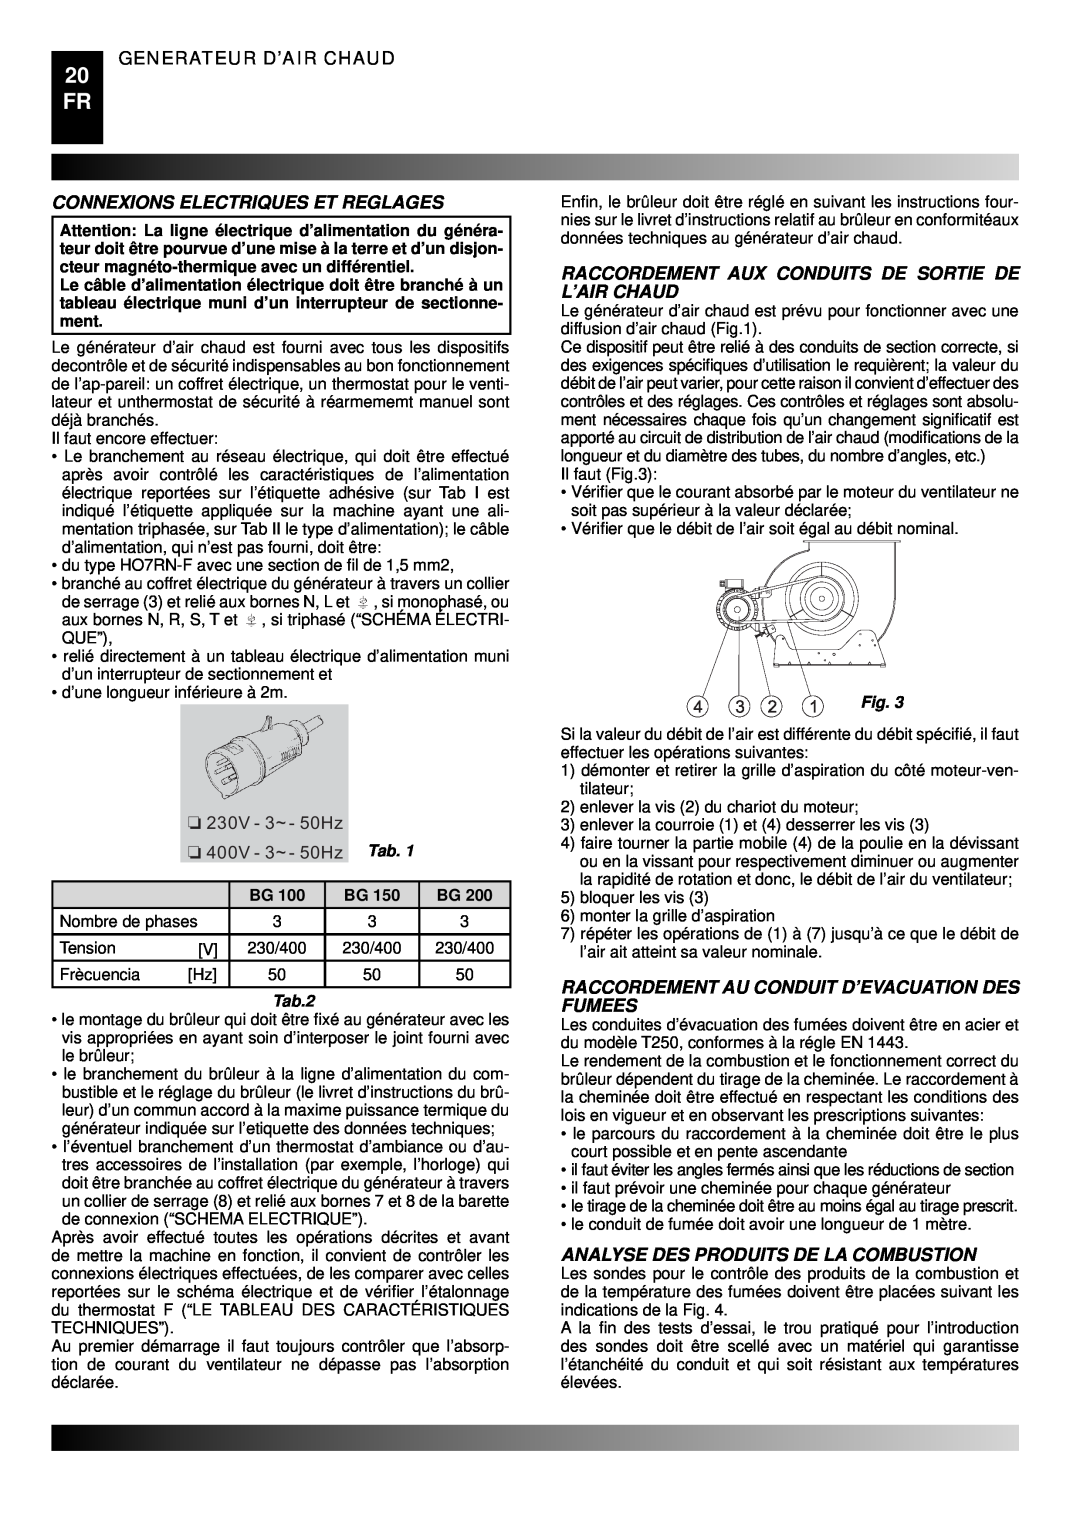 Master Lock BG 200, BG 100 Connexions Electriques Et Reglages, Raccordement Aux Conduits De Sortie De L’Air Chaud, Tab.2 